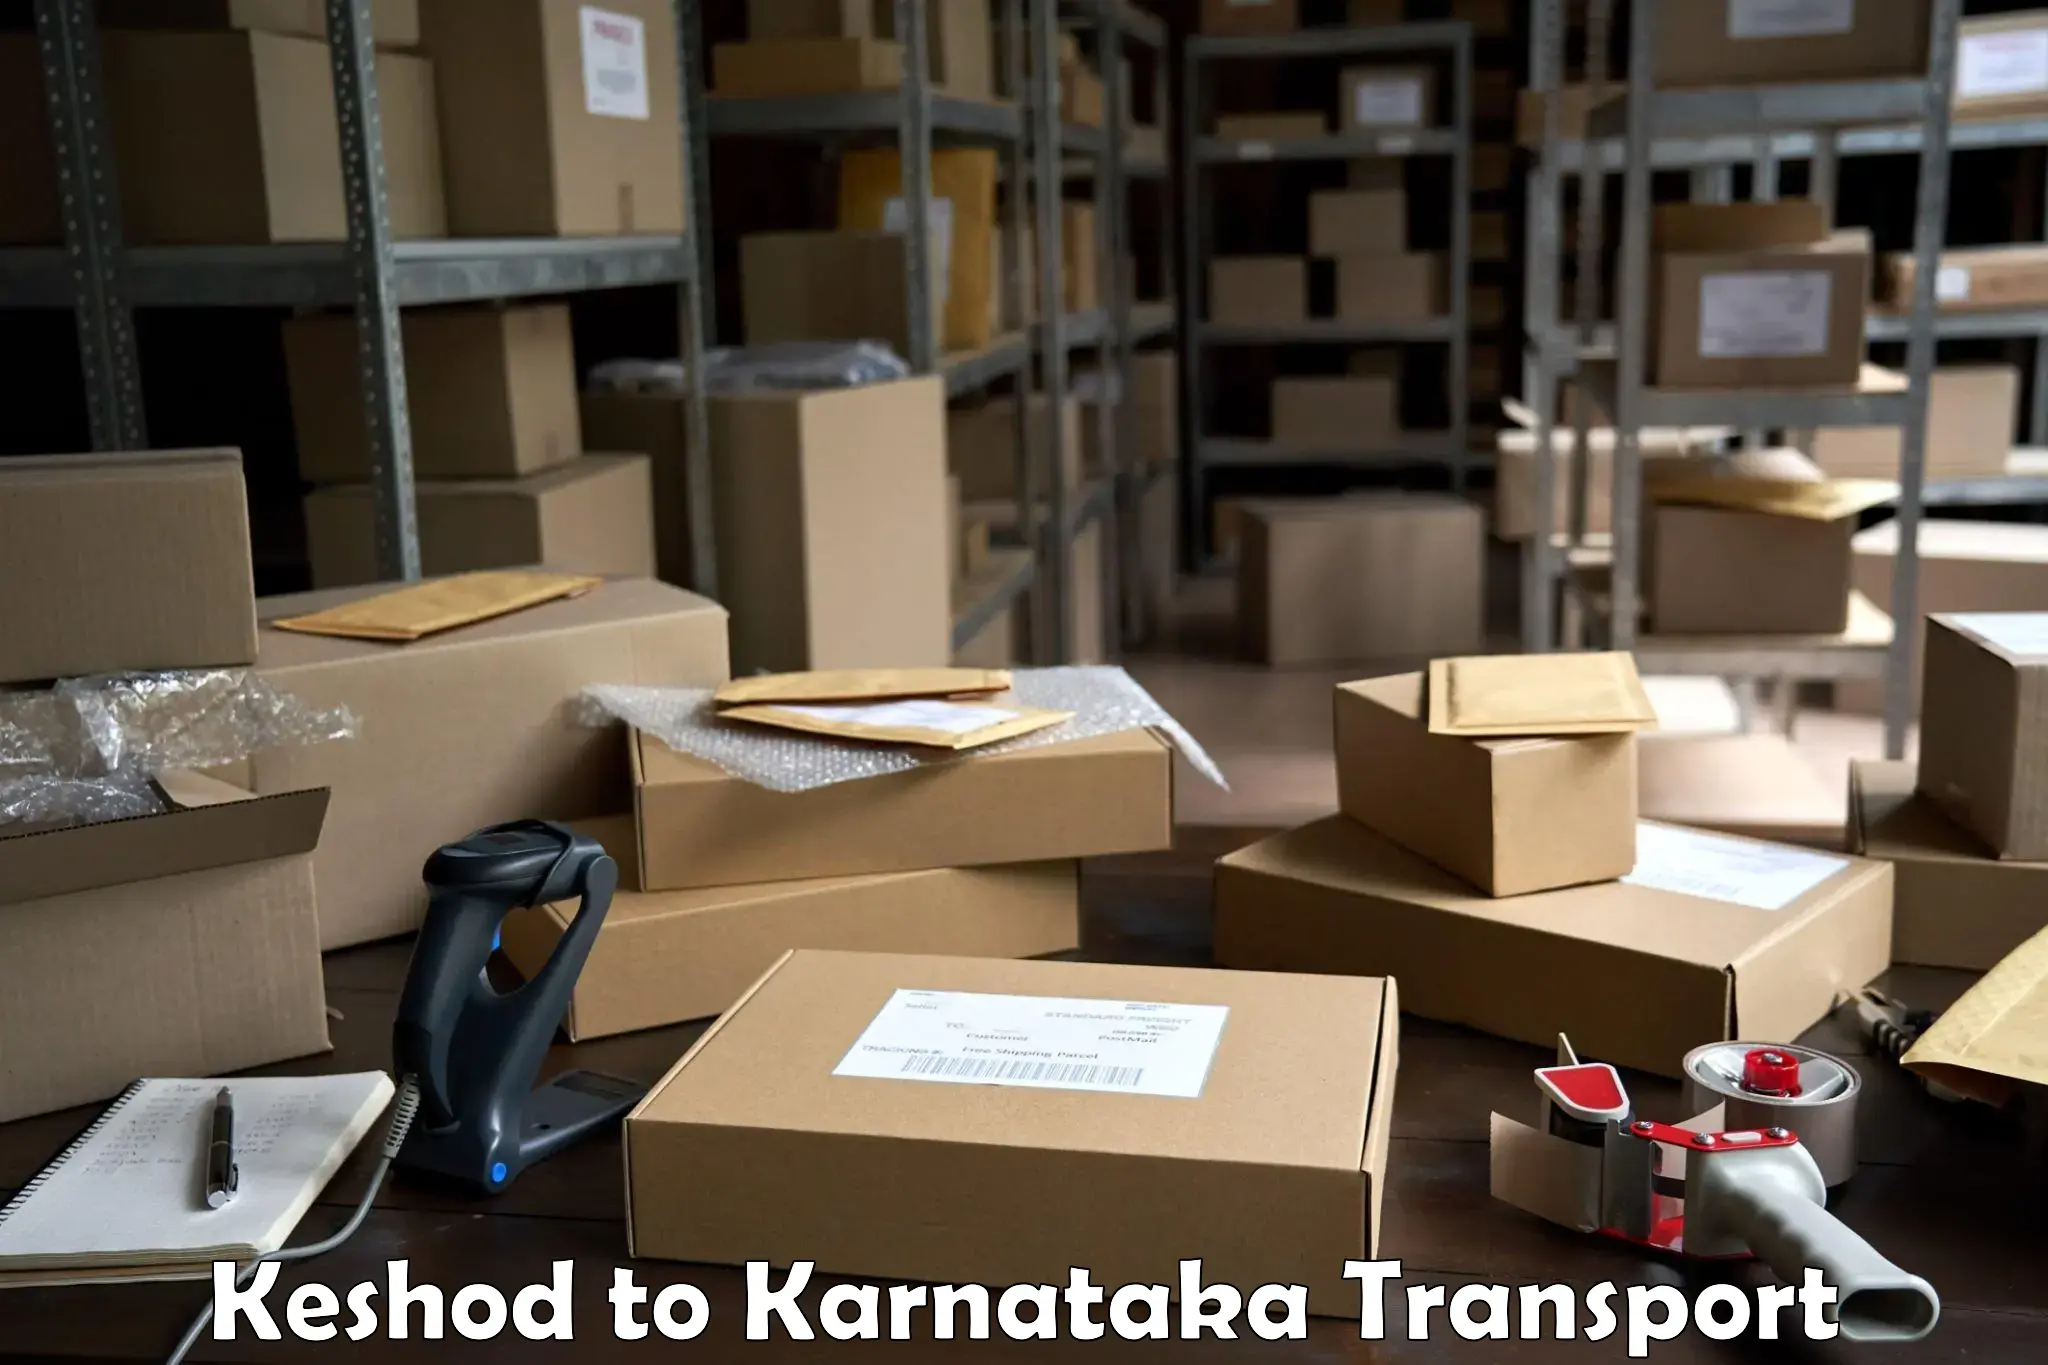 Shipping partner Keshod to Karnataka